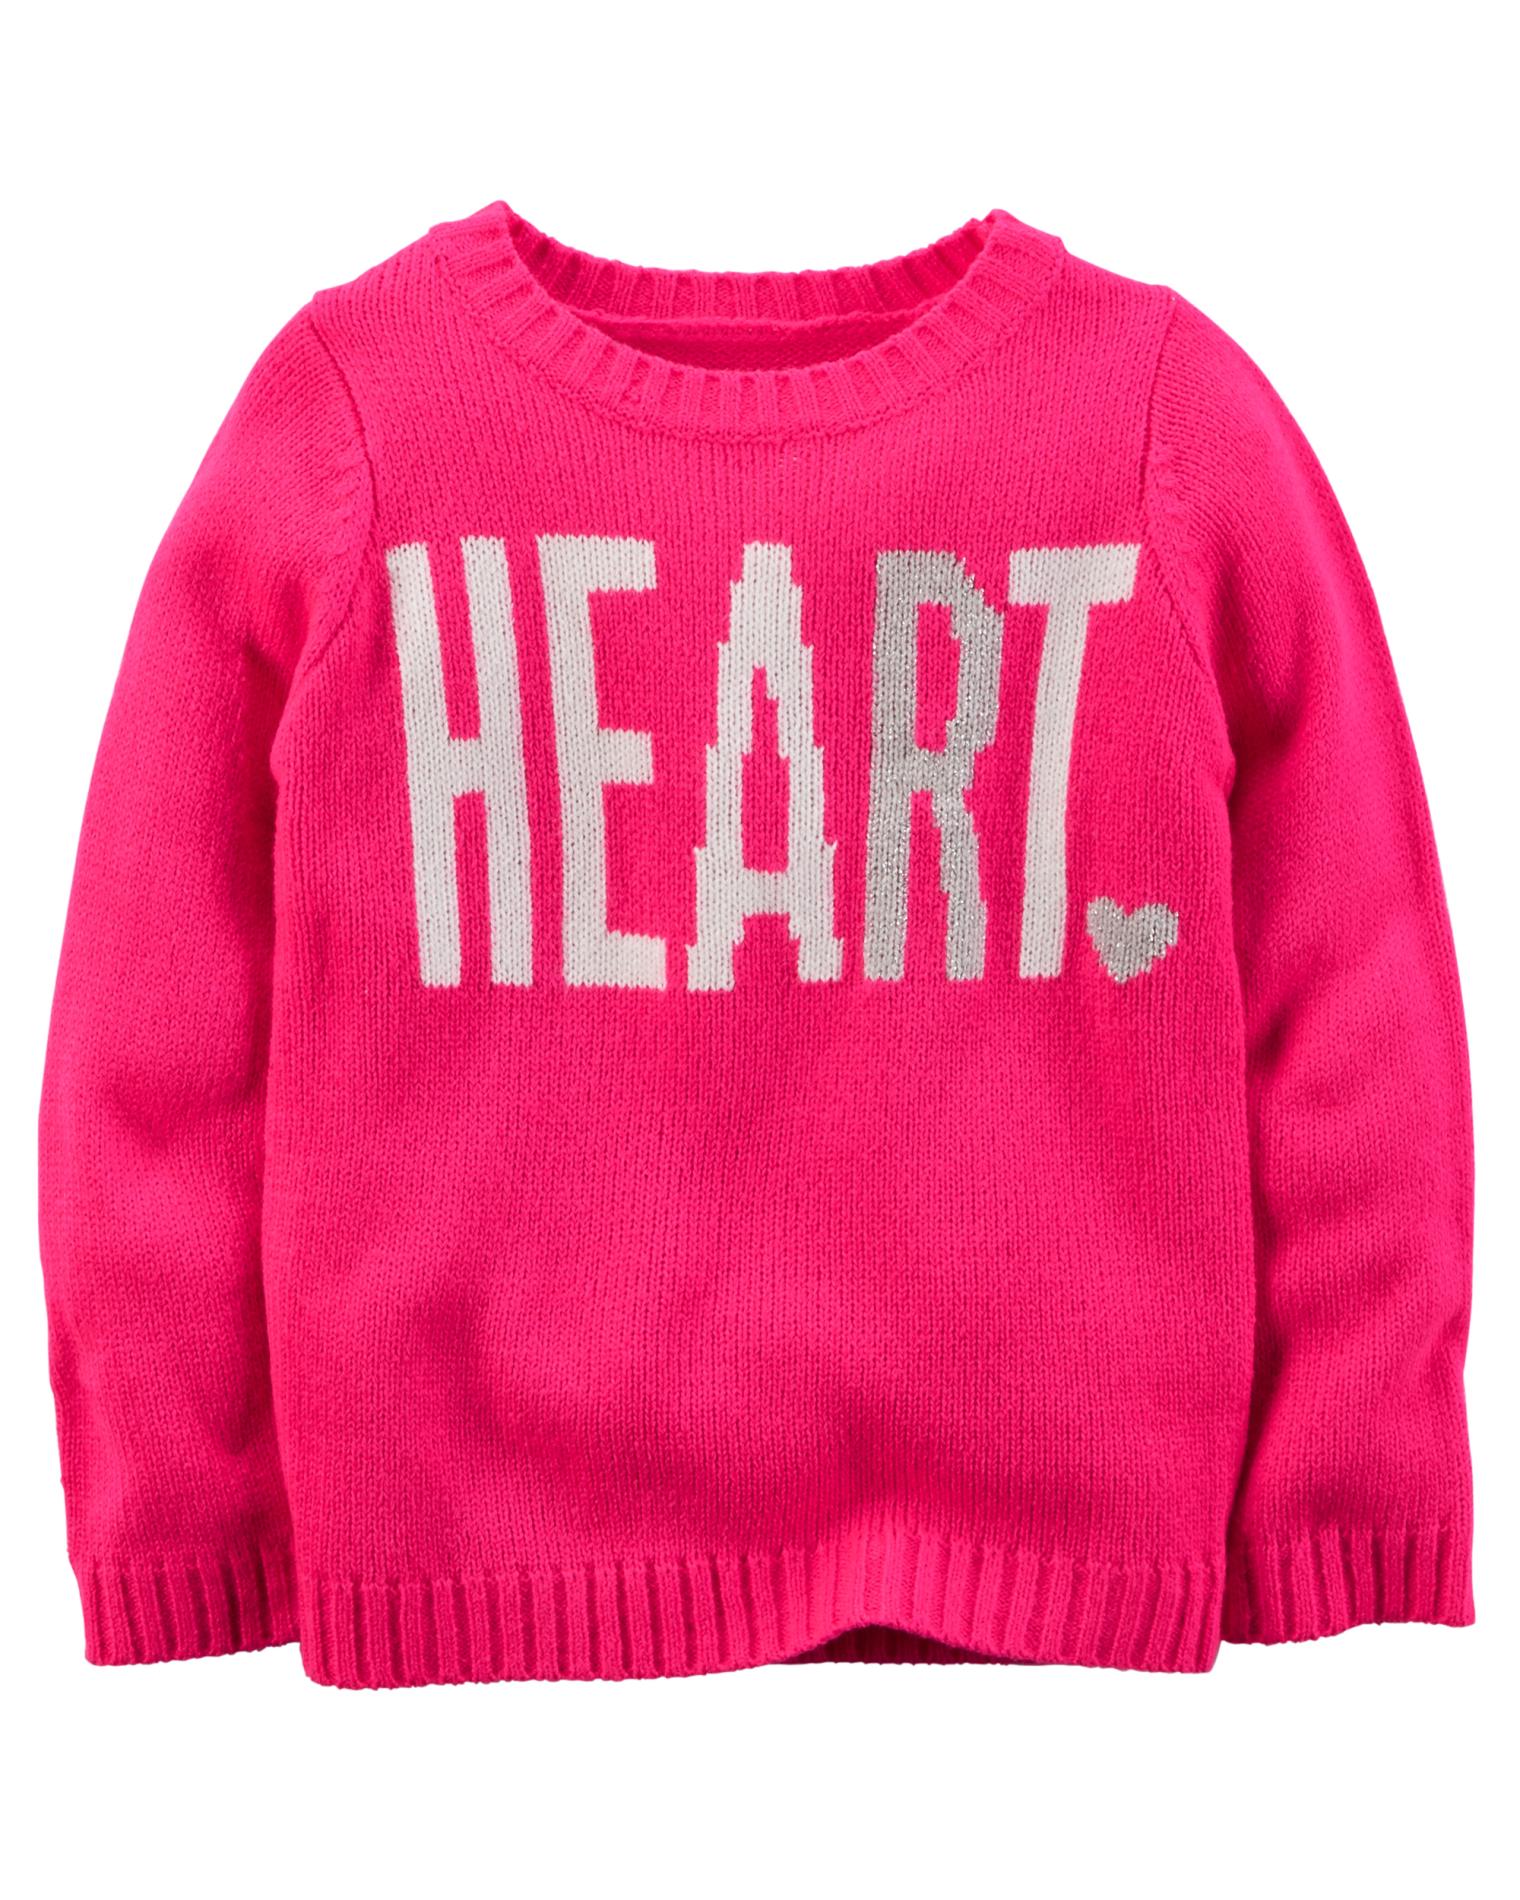 Carter's Girls' Crew Neck Sweater - Heart